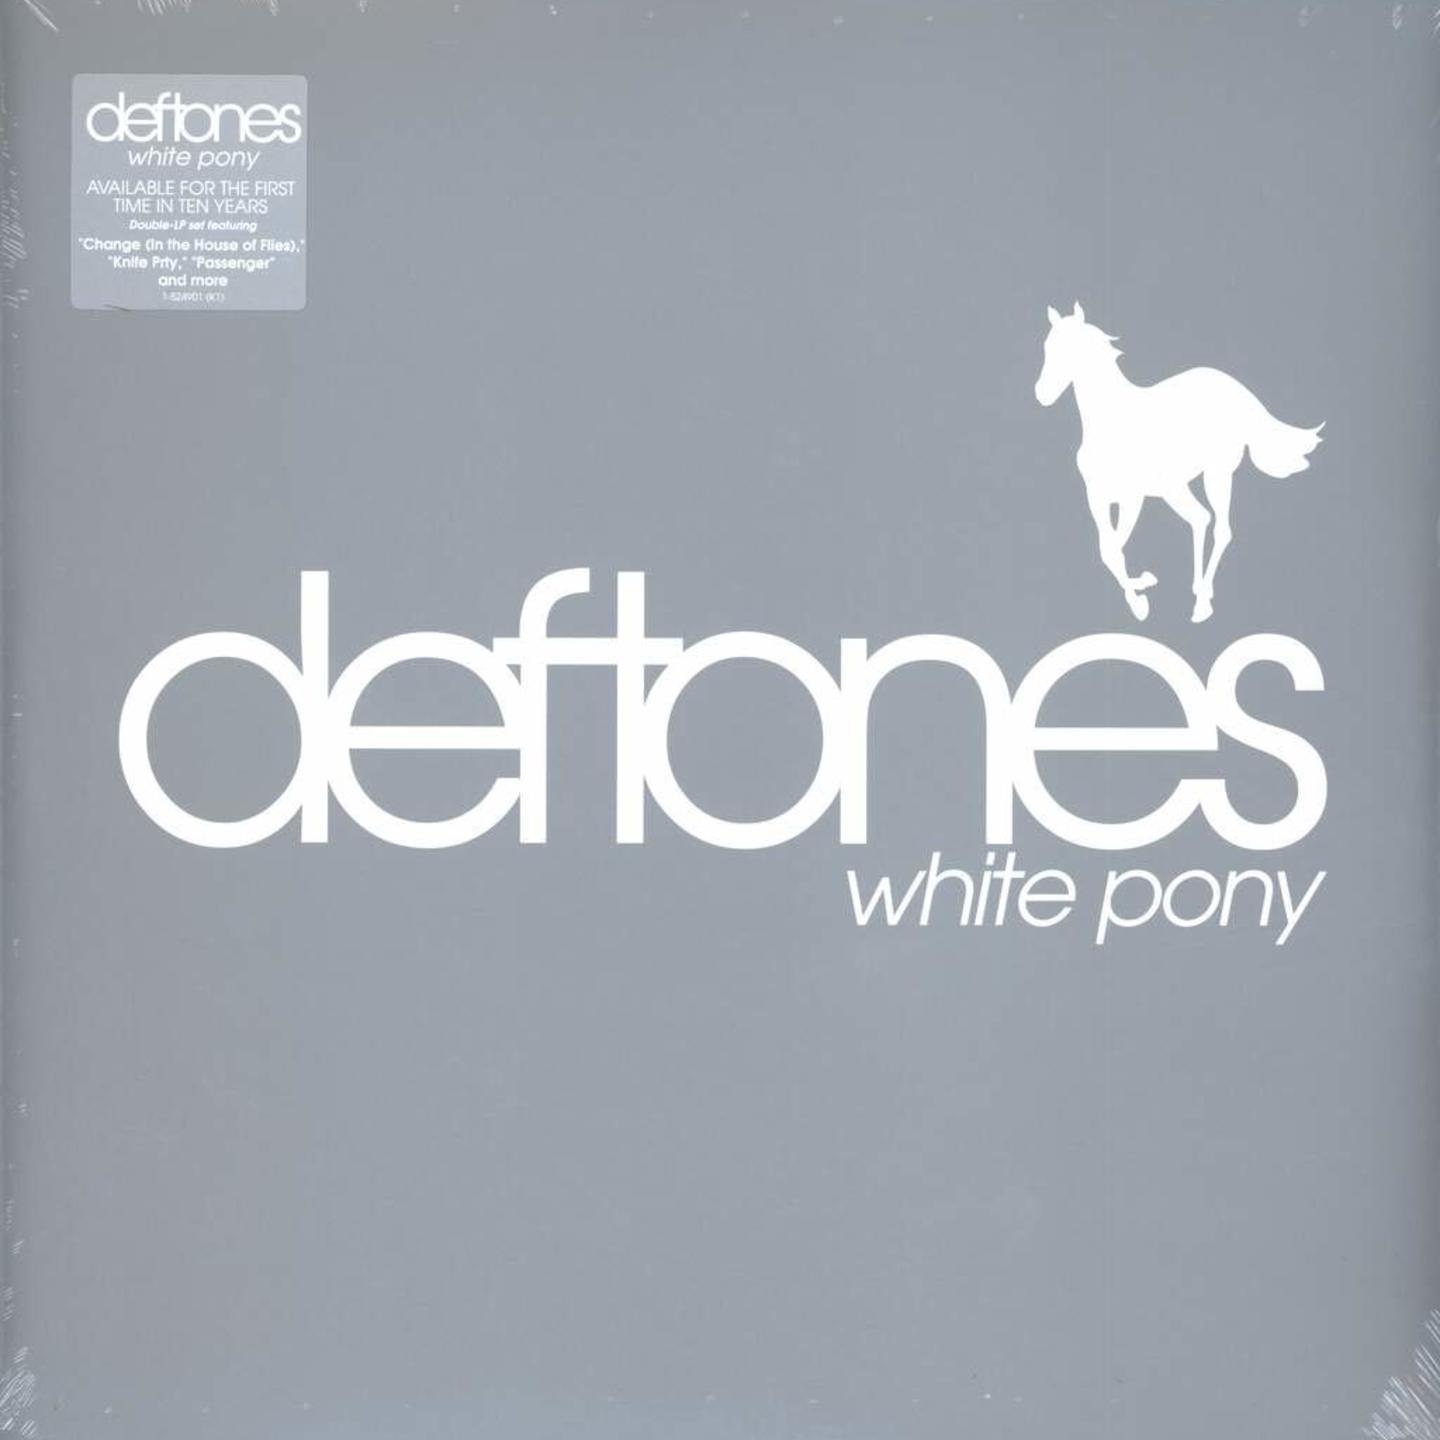 DEFTONES - White Pony 2xLP